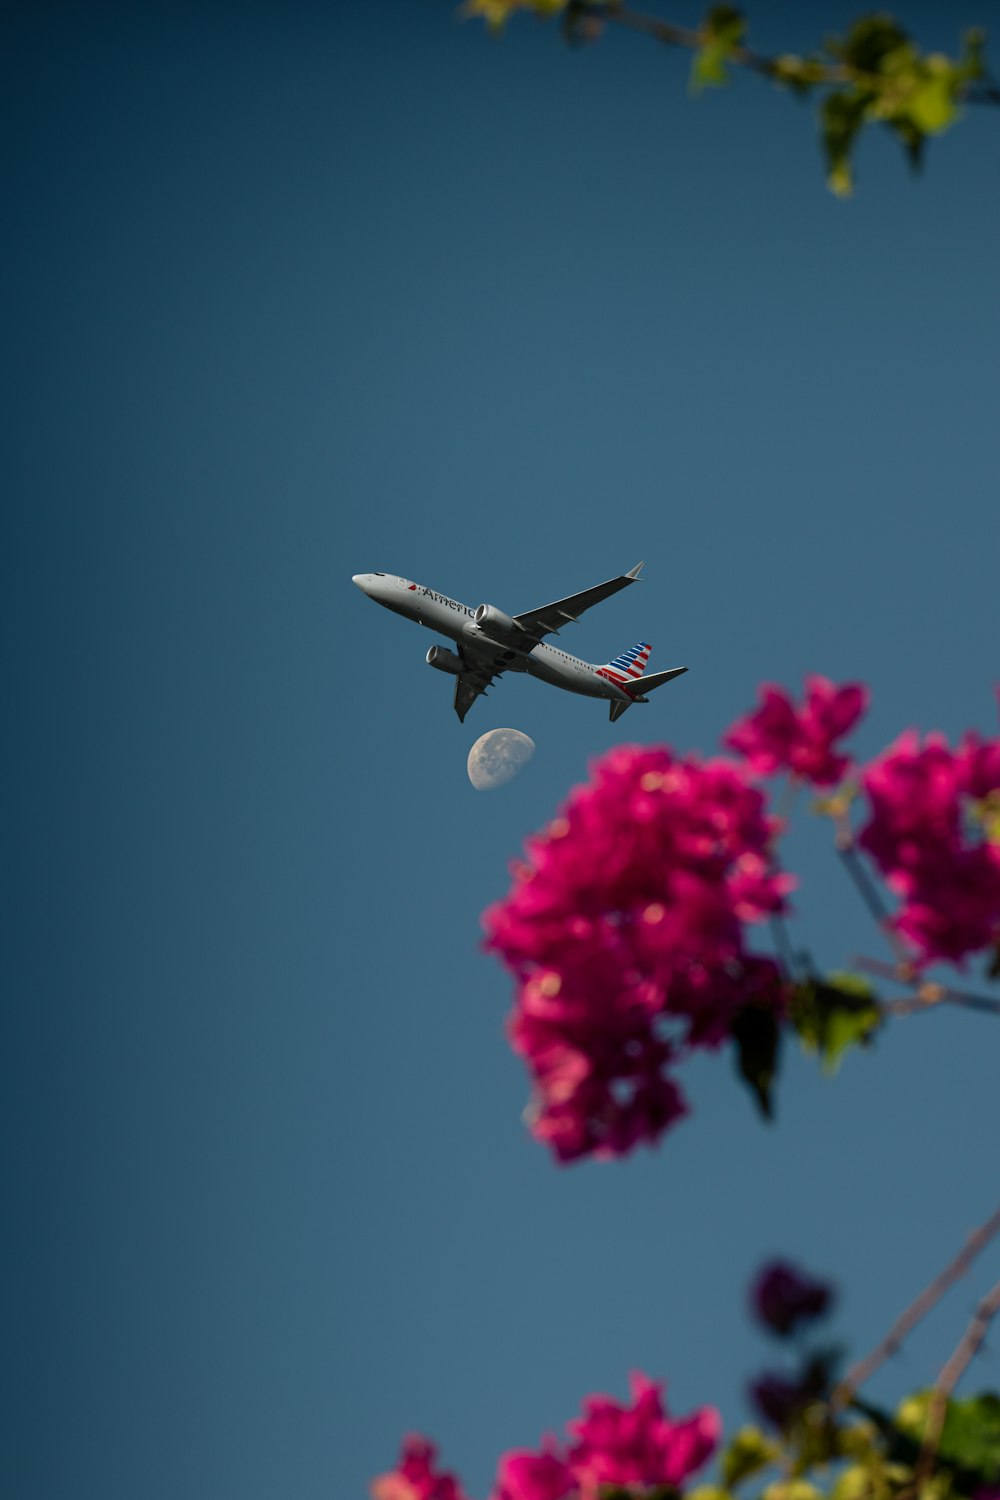 Un avion volant dans le ciel avec des fleurs roses au premier plan